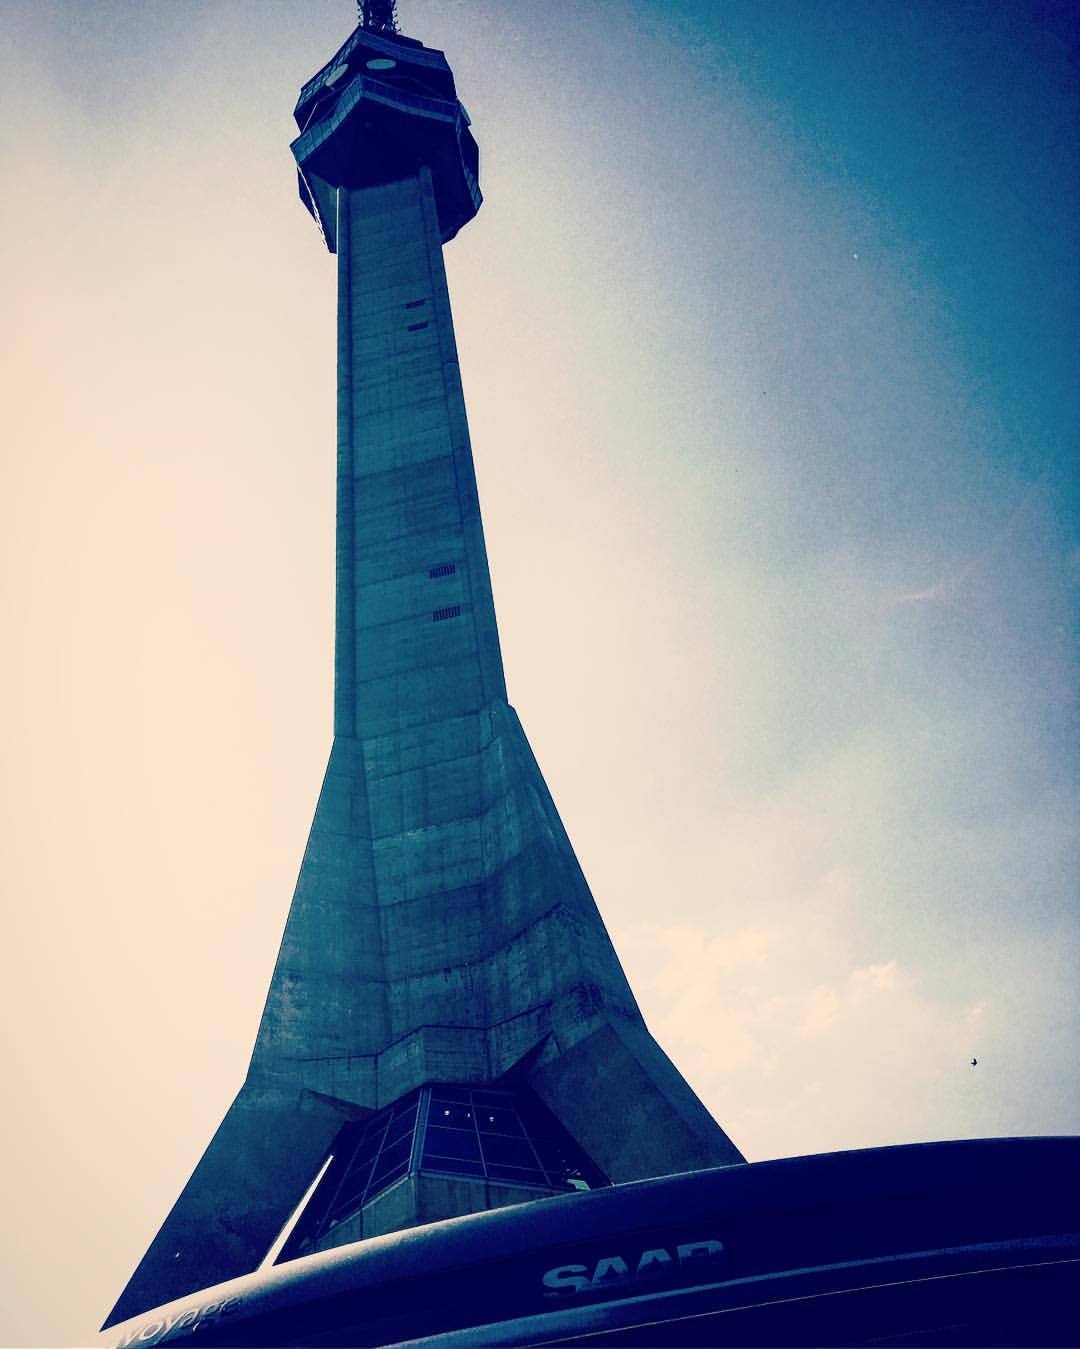 Avala Tower.
#saabvoyagebelgade2018 #saab #saab95ng #spomenik (at Avala Tower)